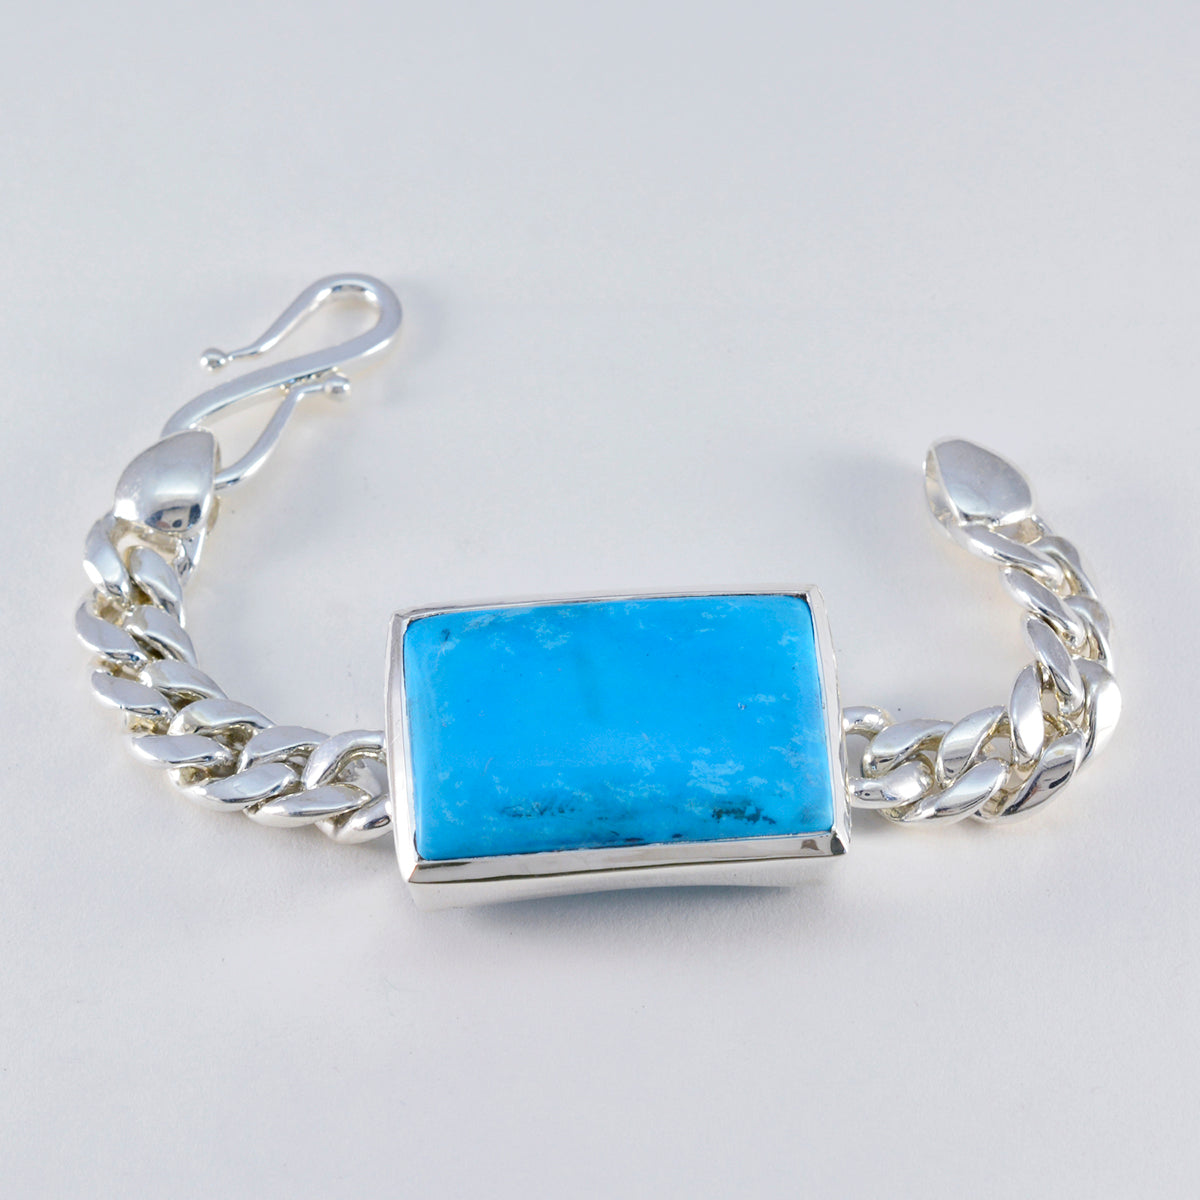 Riyo mature bracelet en argent sterling 925 pour femme bracelet turquoise bracelet multi-bracelet à réglage de lunette avec crochet en S bracelet à breloques taille L 6-8,5 pouces.